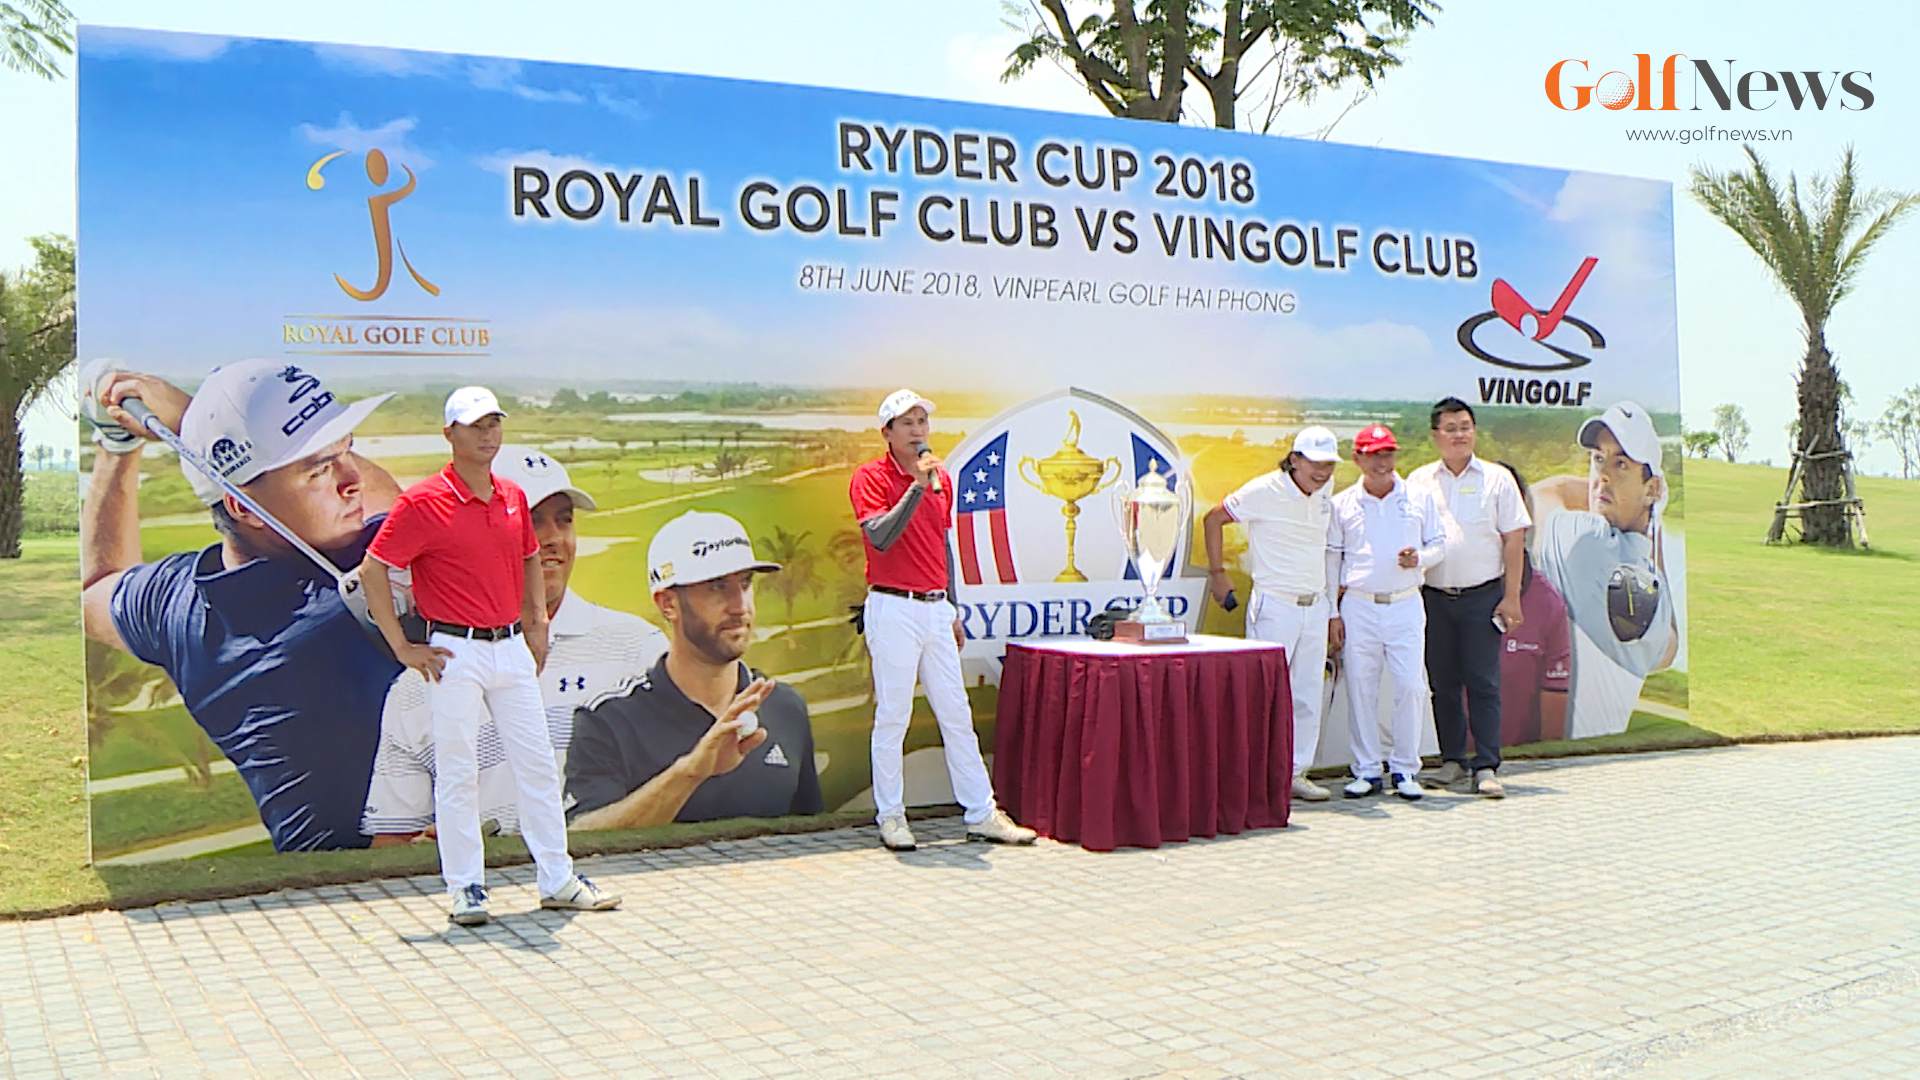 Khai mạc giải đấu Ryder Cup 2018: Royal Golf Club với Vingolf Golf Club